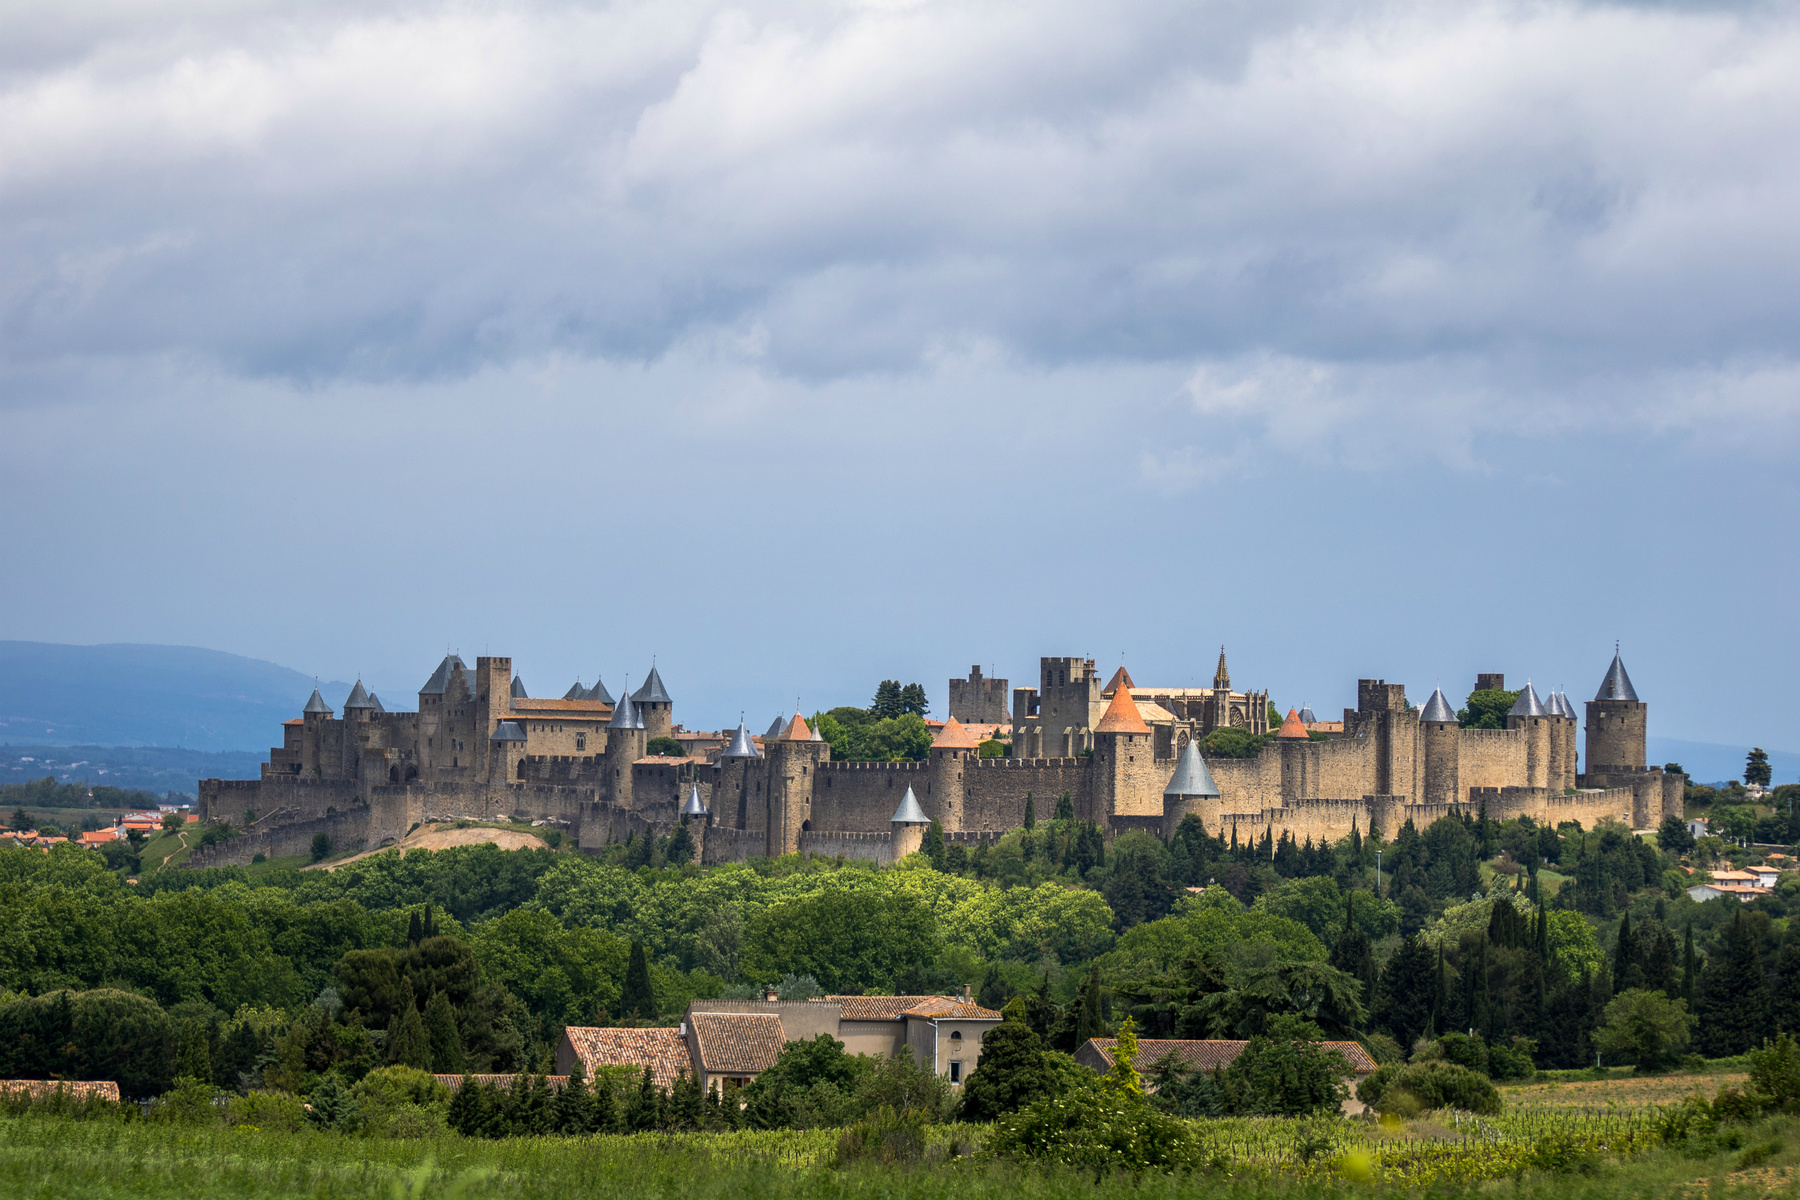 Cité de Carcassonne 